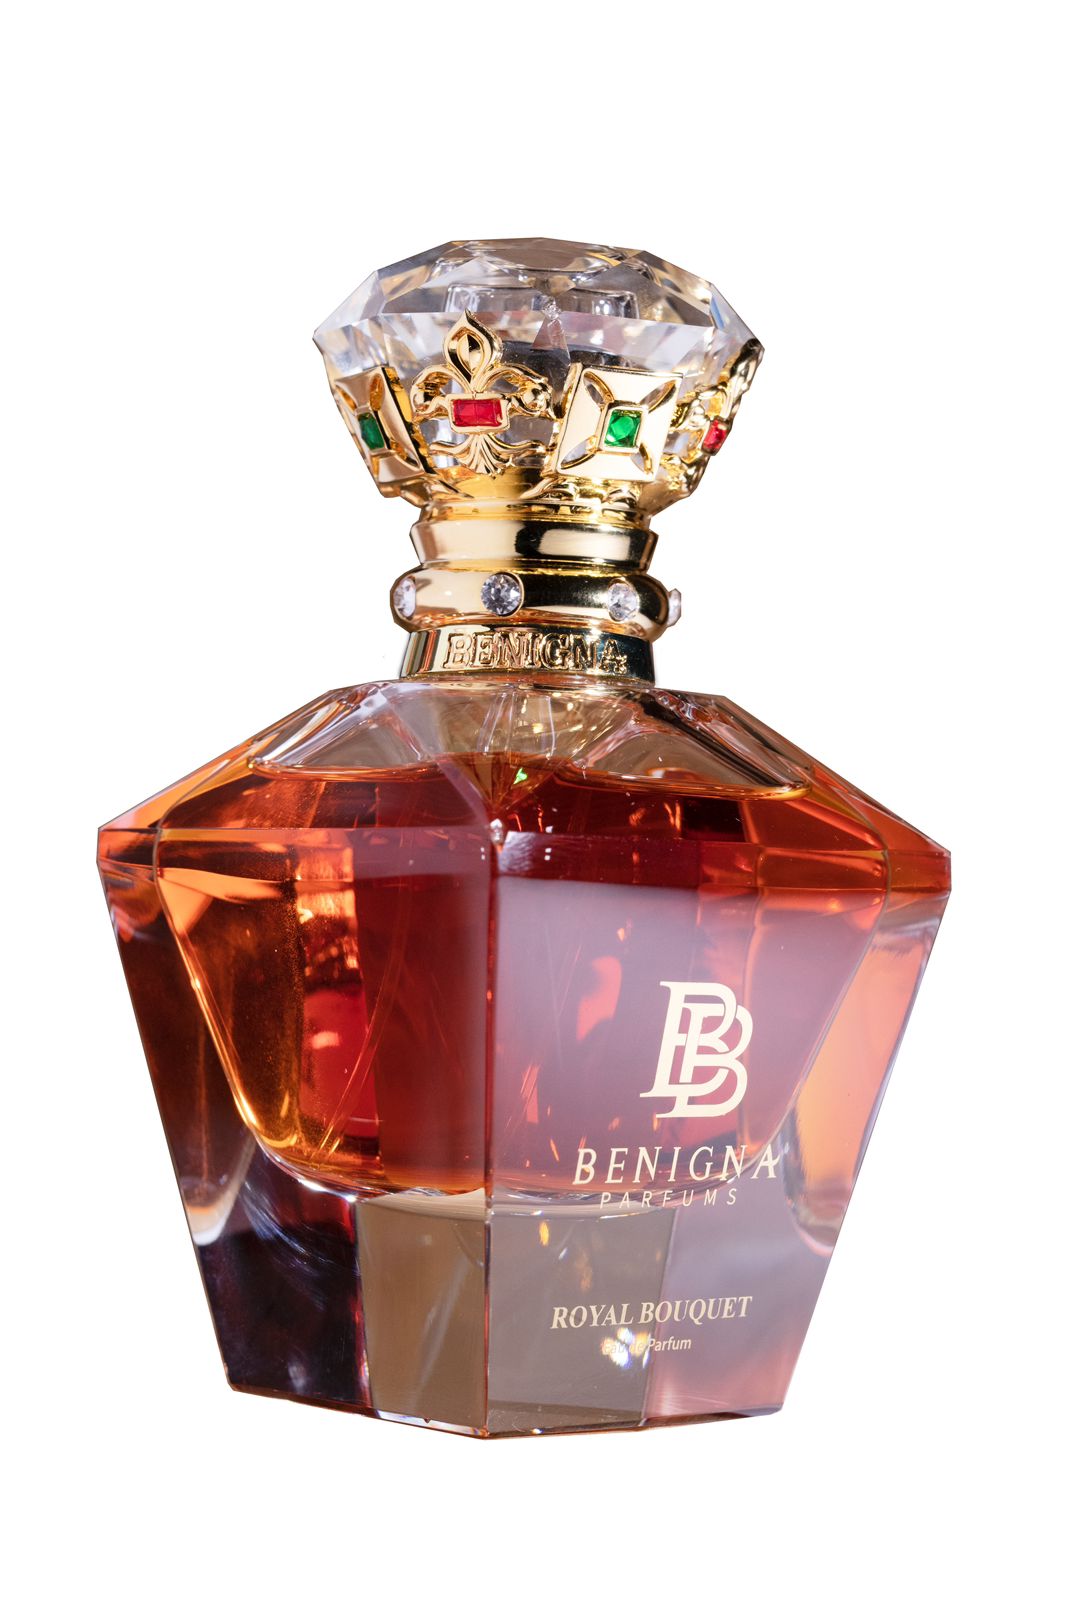 Eindig Voetganger stopverf Royal Bouquet – Benigna Parfums